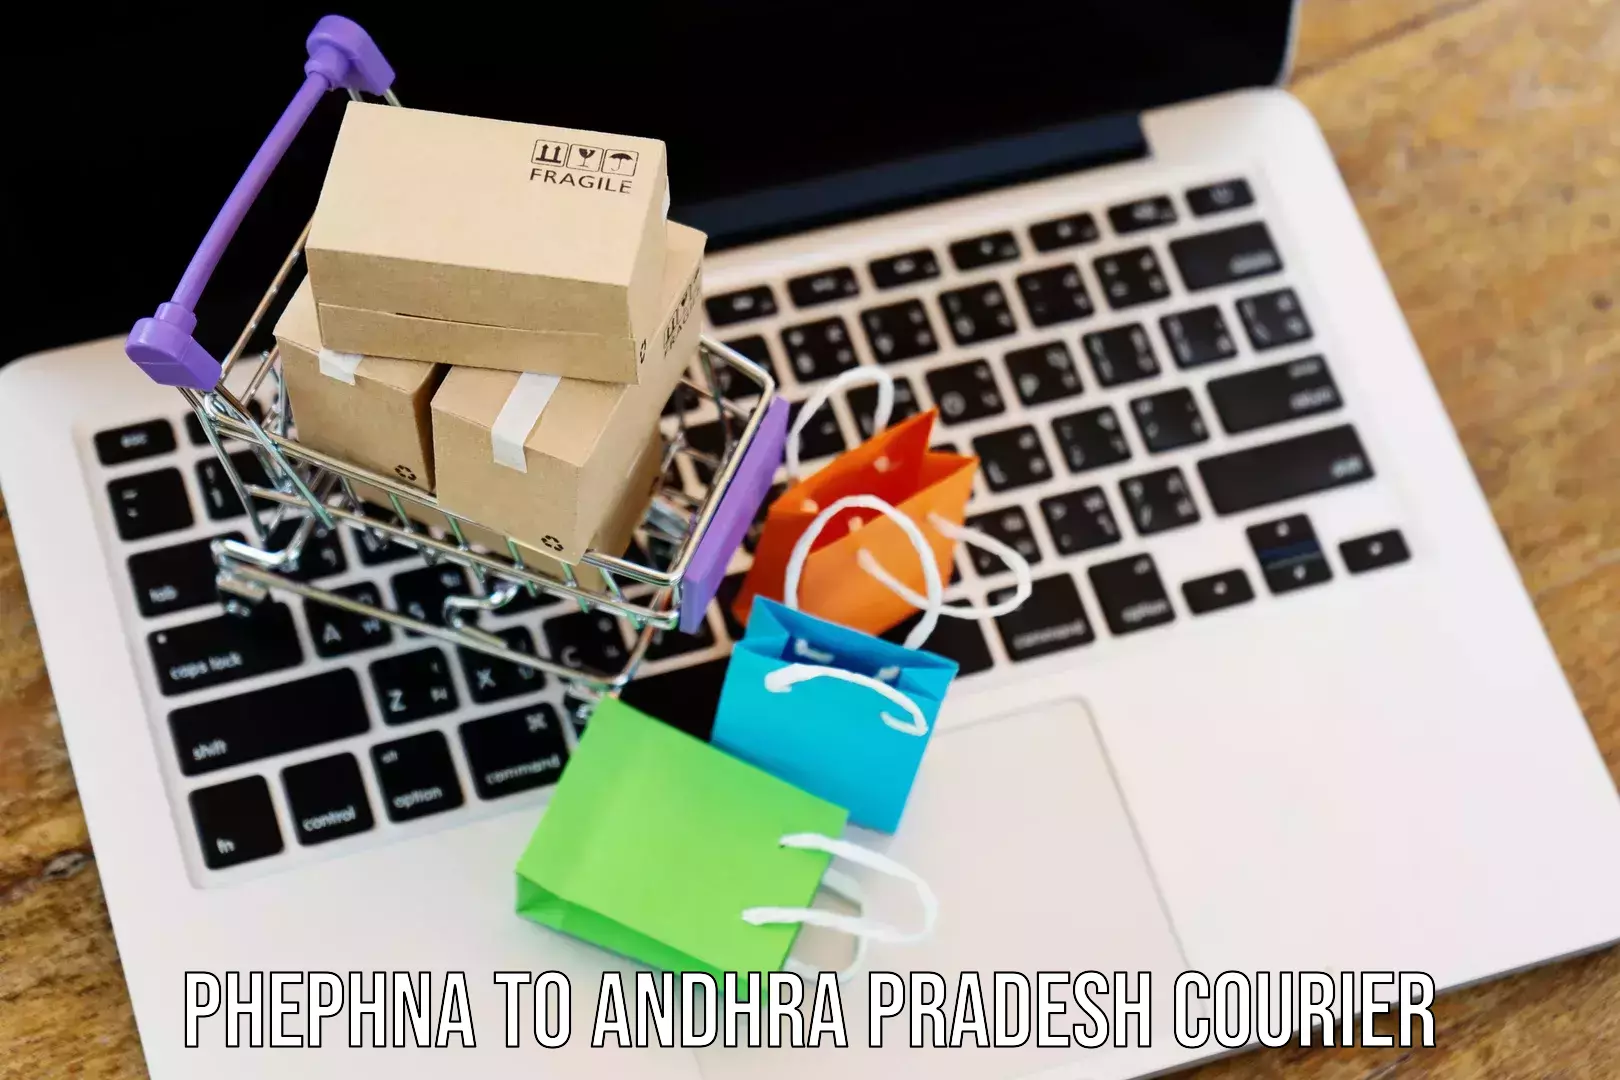 Easy access courier services Phephna to Allagadda